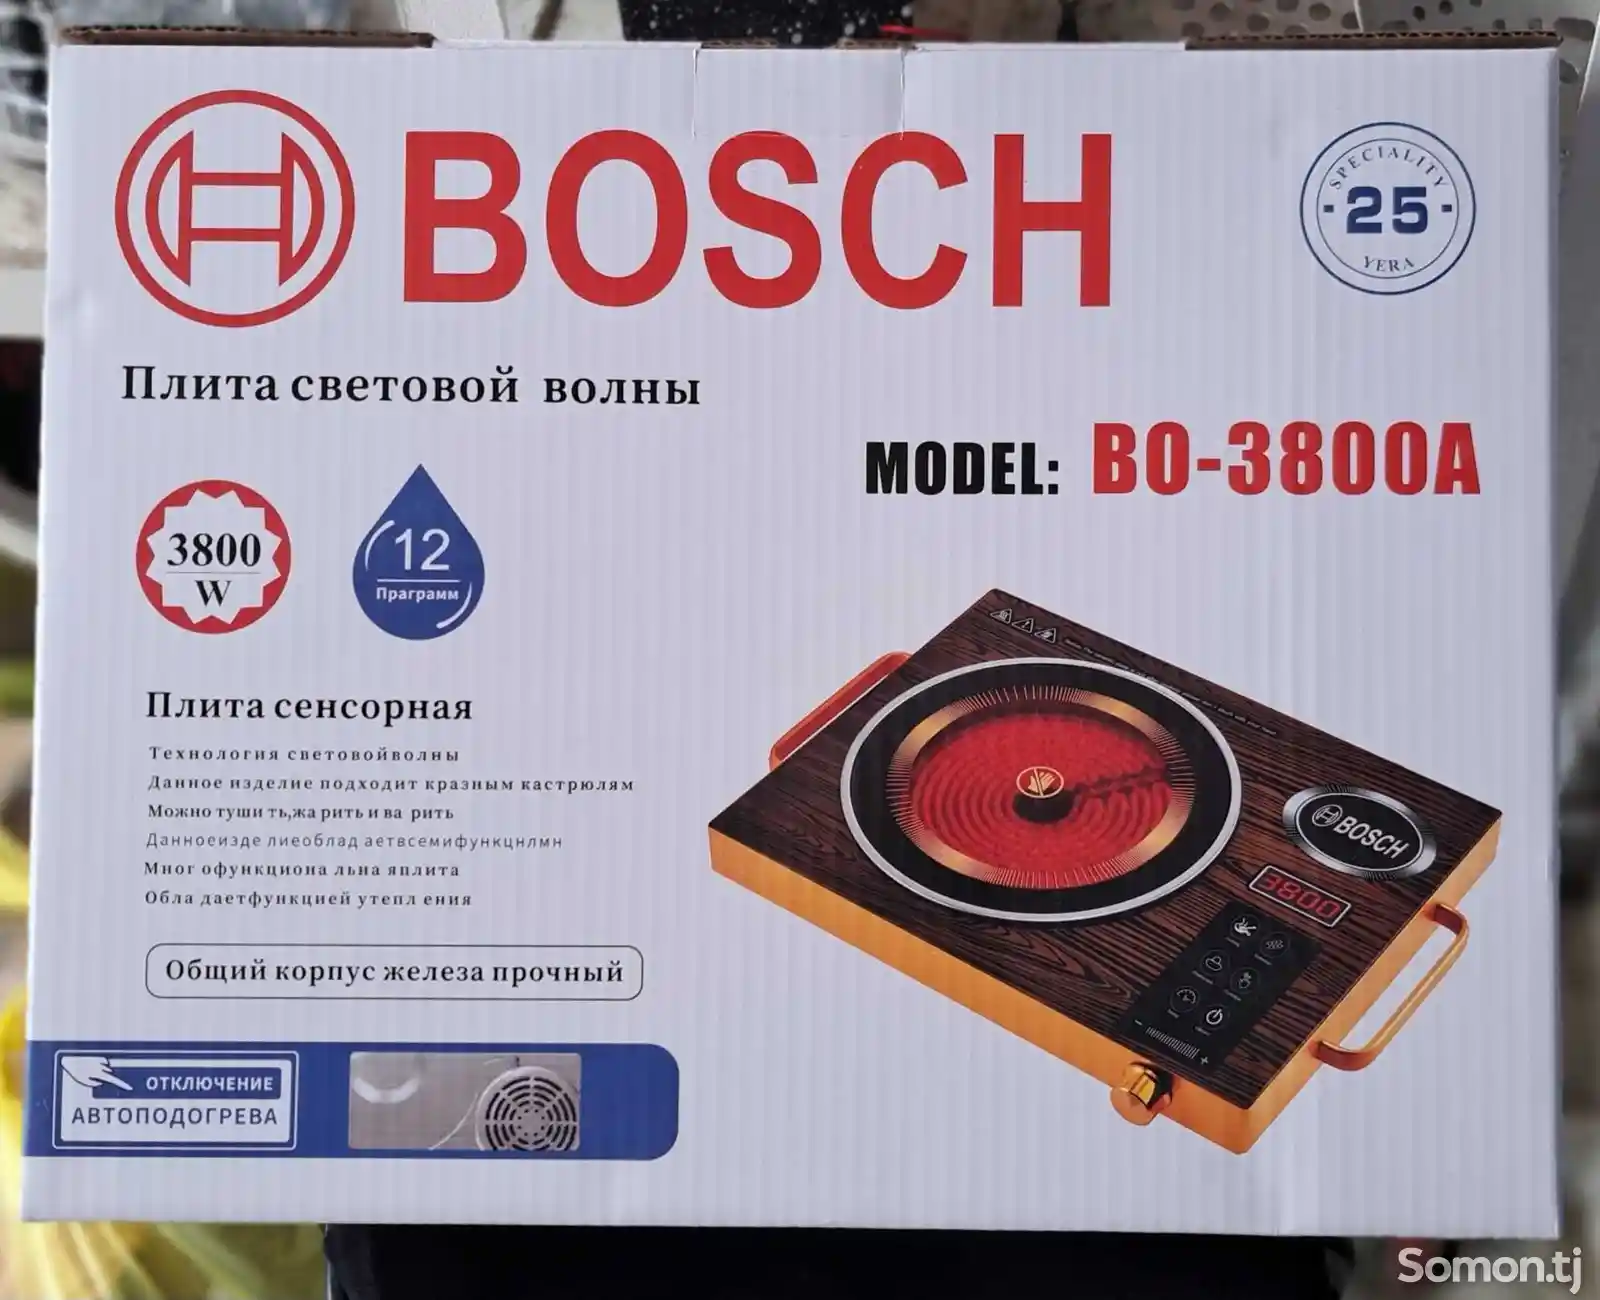 Сенсорная плита Bosch 3800